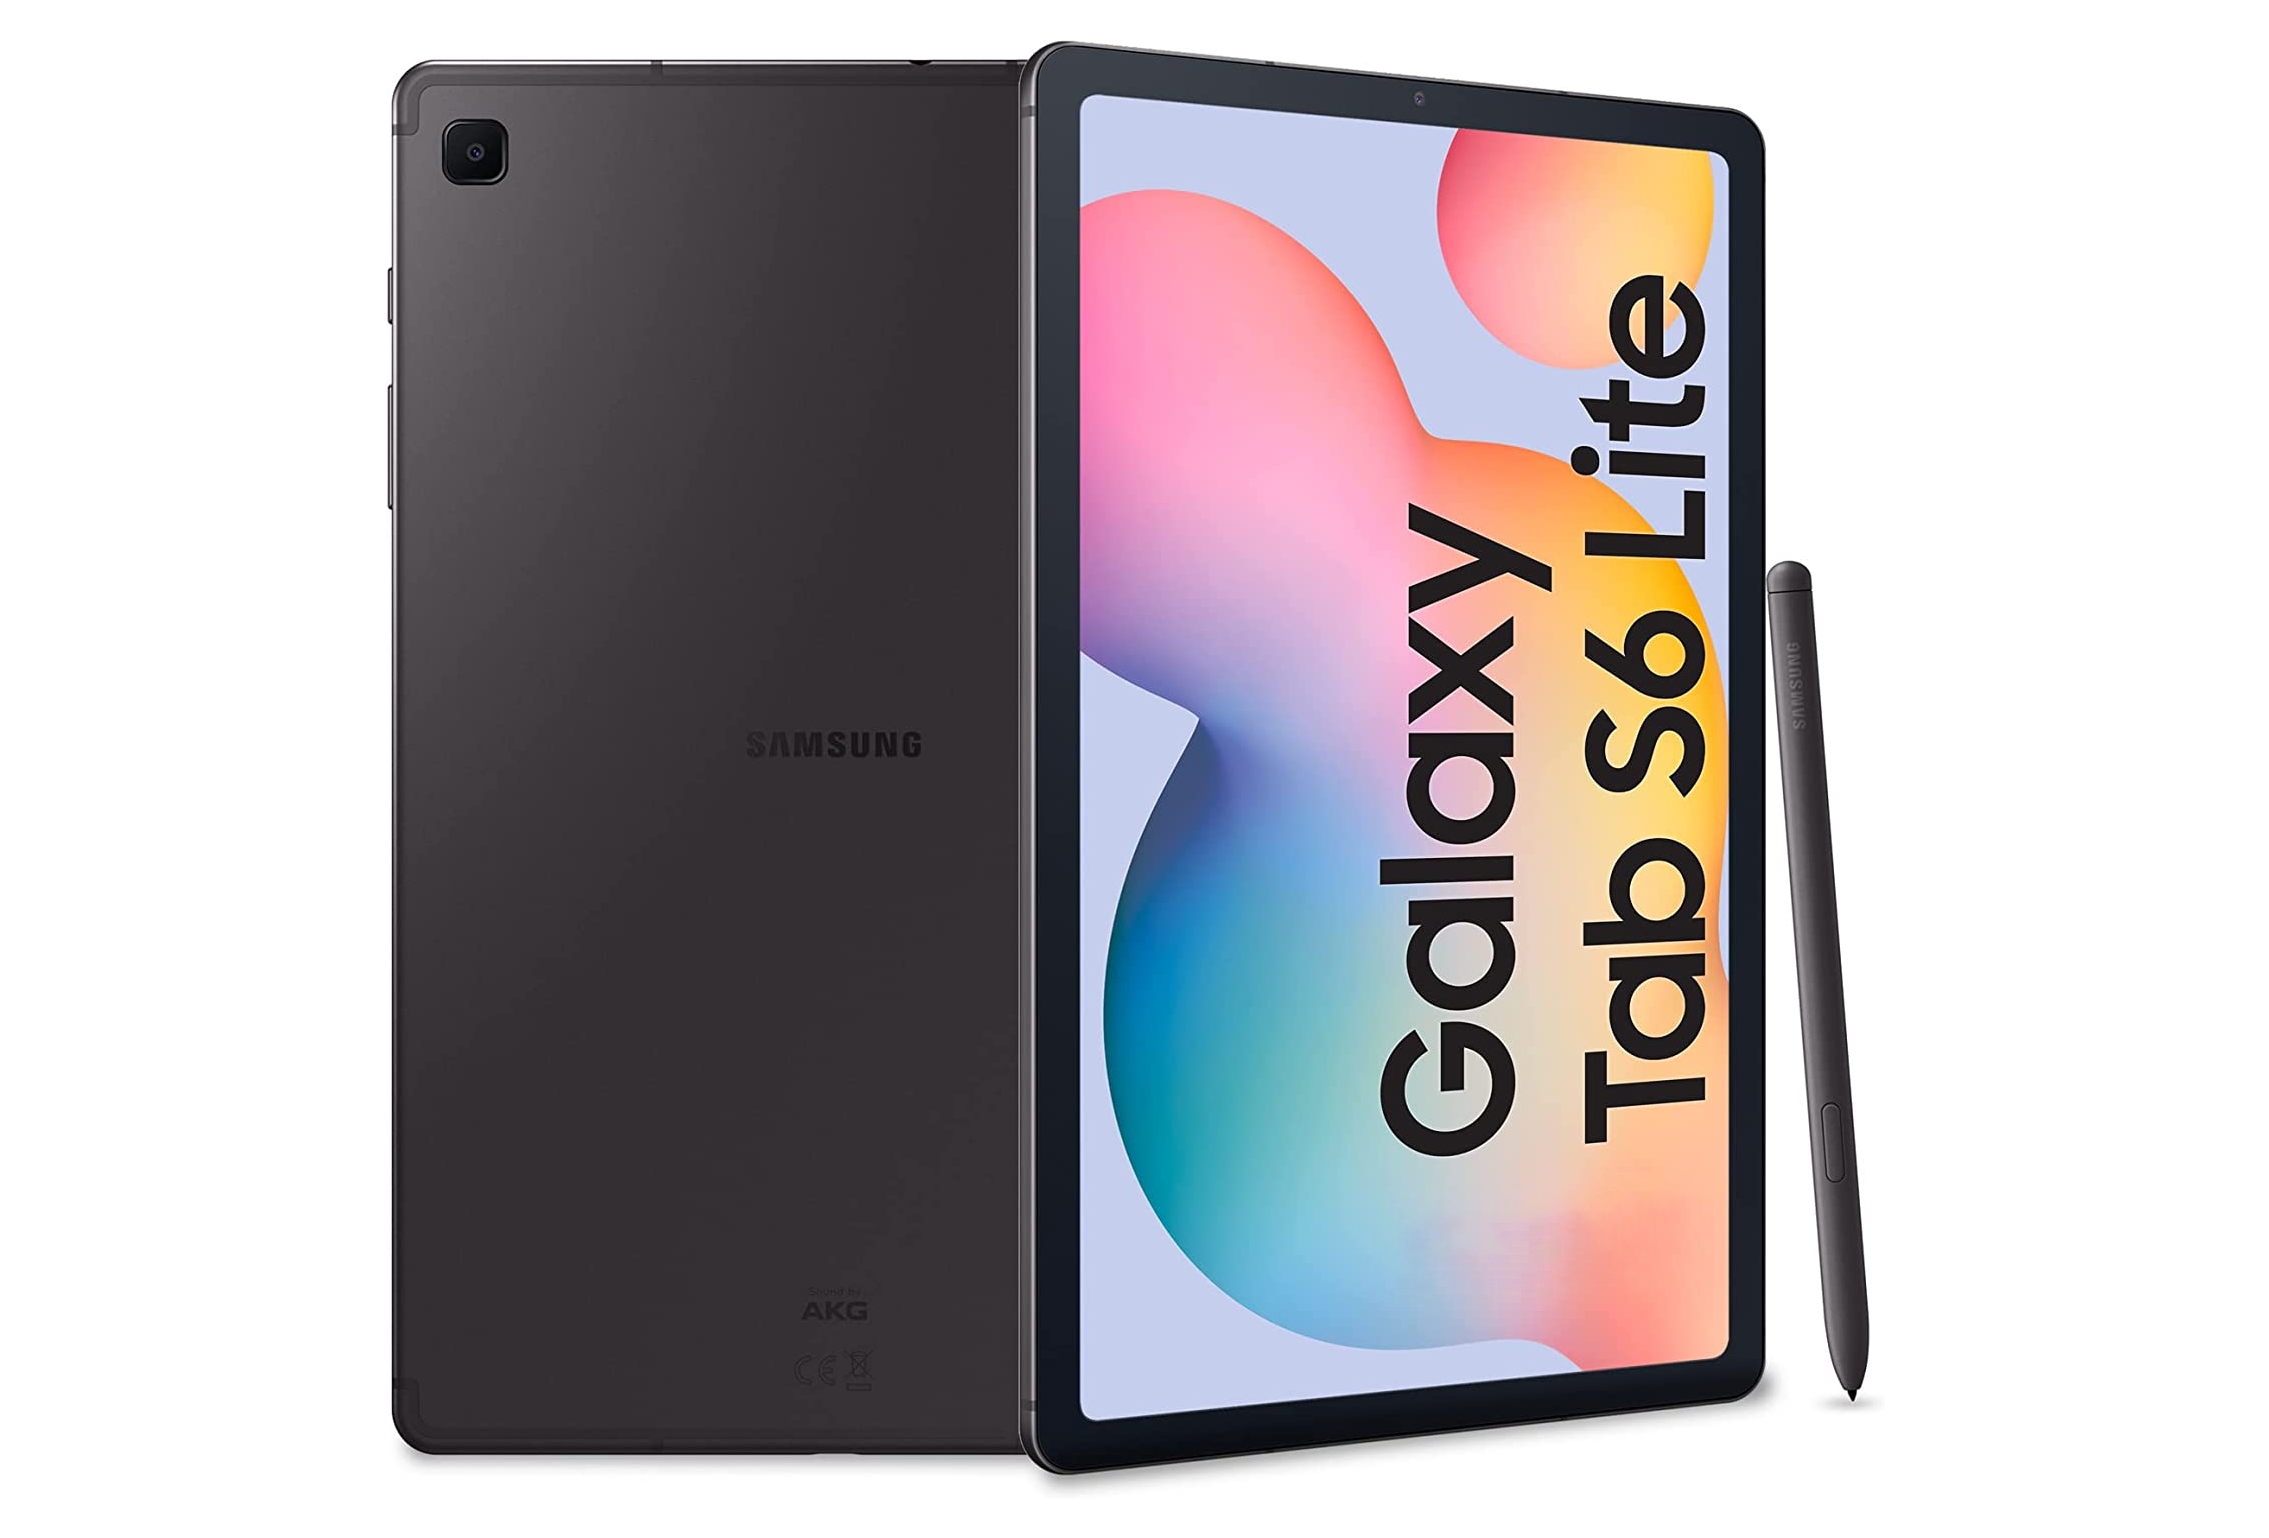 Sconto di 135 dollari: Samsung Galaxy Tab S6 Lite con display da 10,4″, chip Exynos 9611 e supporto S Pen in vendita su Amazon a un prezzo speciale